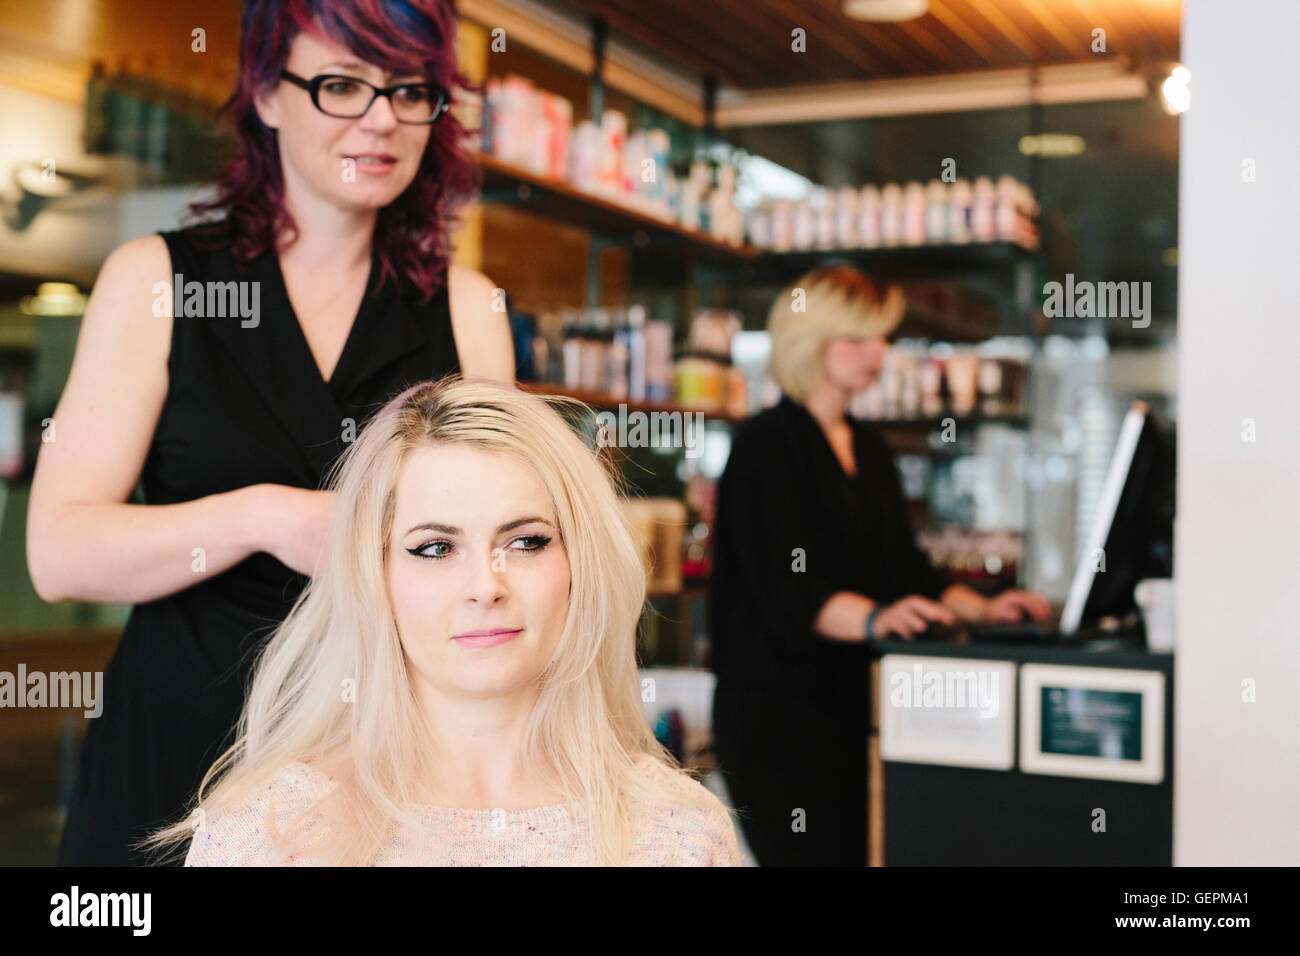 Ein Friseur und ein Client, eine junge Frau mit langen blonden Haaren in einem Friseursalon. Stockfoto